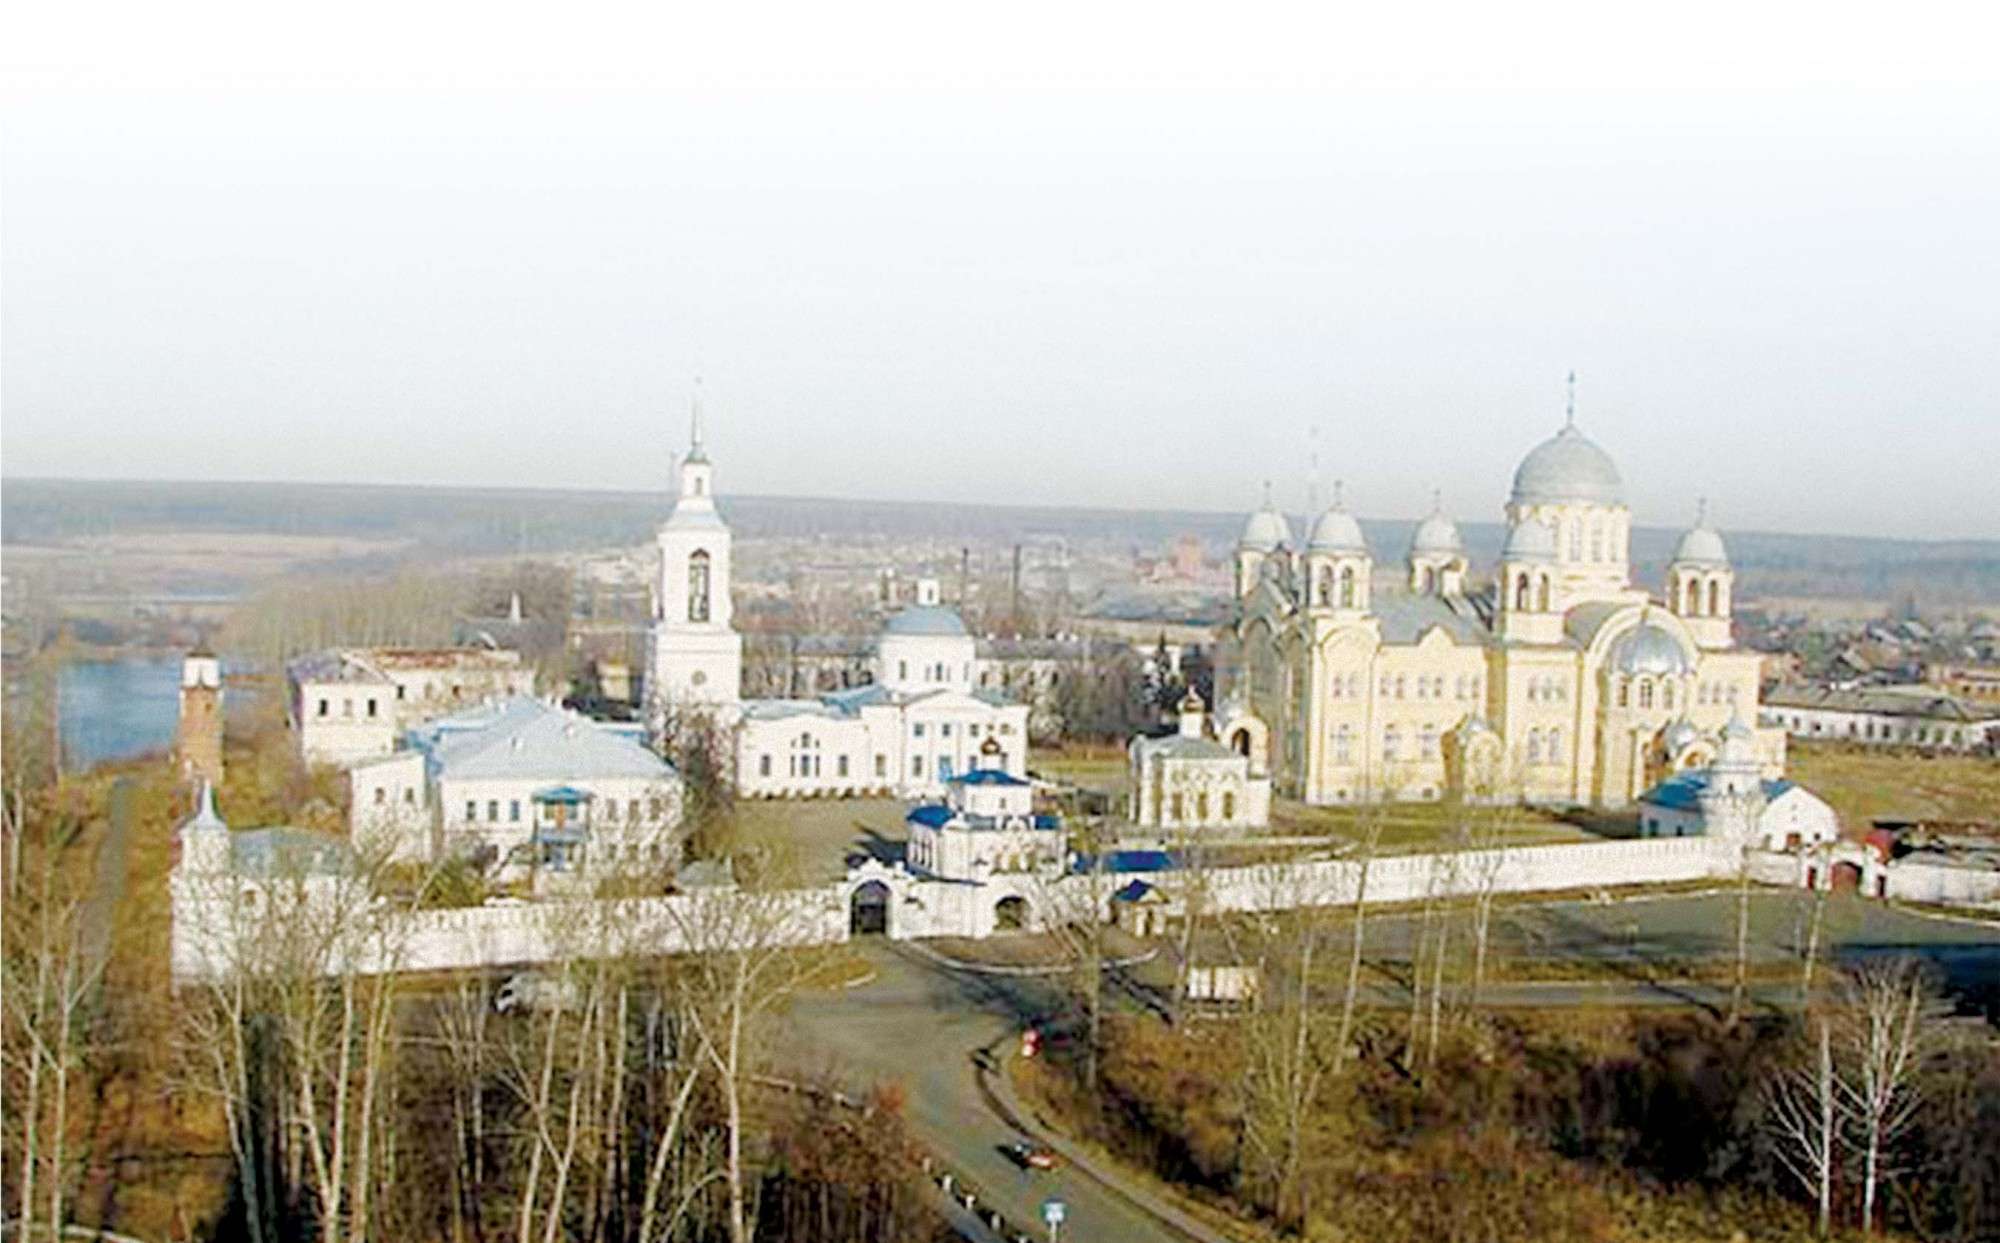 Вид на Свято-Николаевский монастырь с высоты птичьего полета. 2010 год